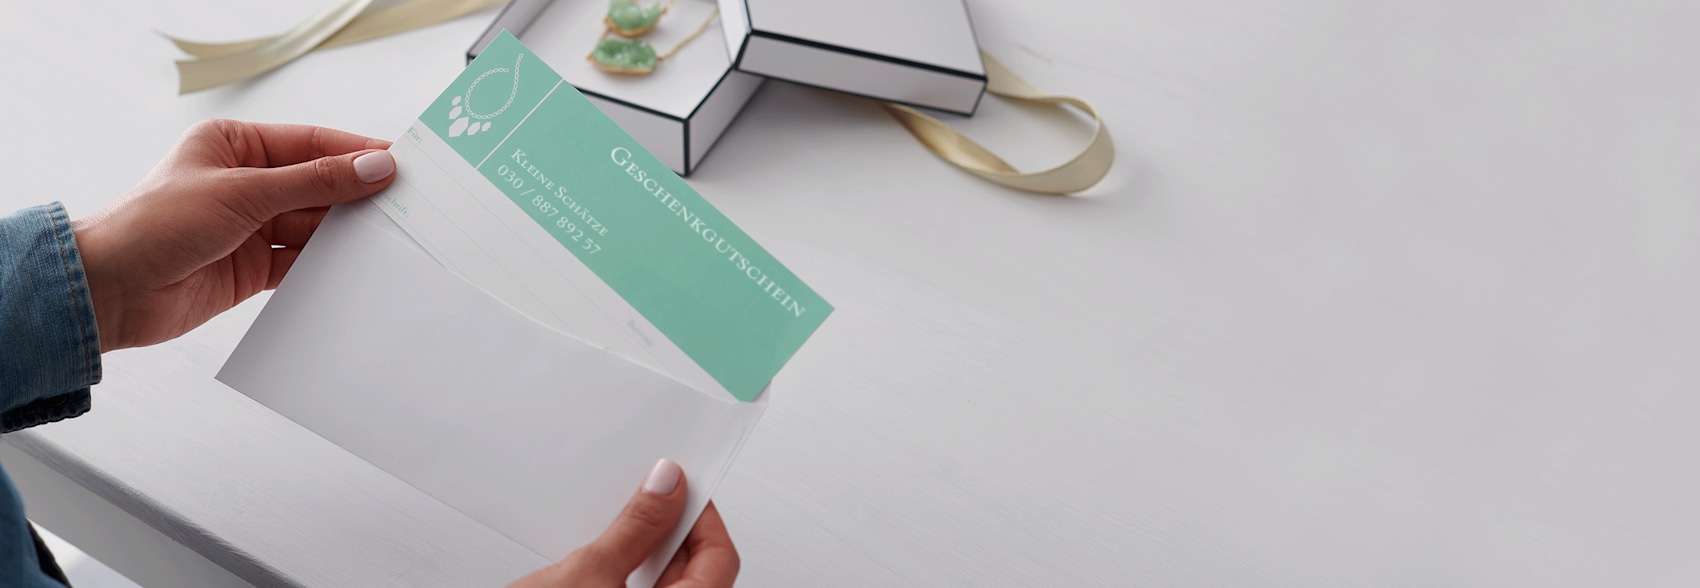 Personalisierte Geschenkgutscheine mit mintgrüner Farbpalette